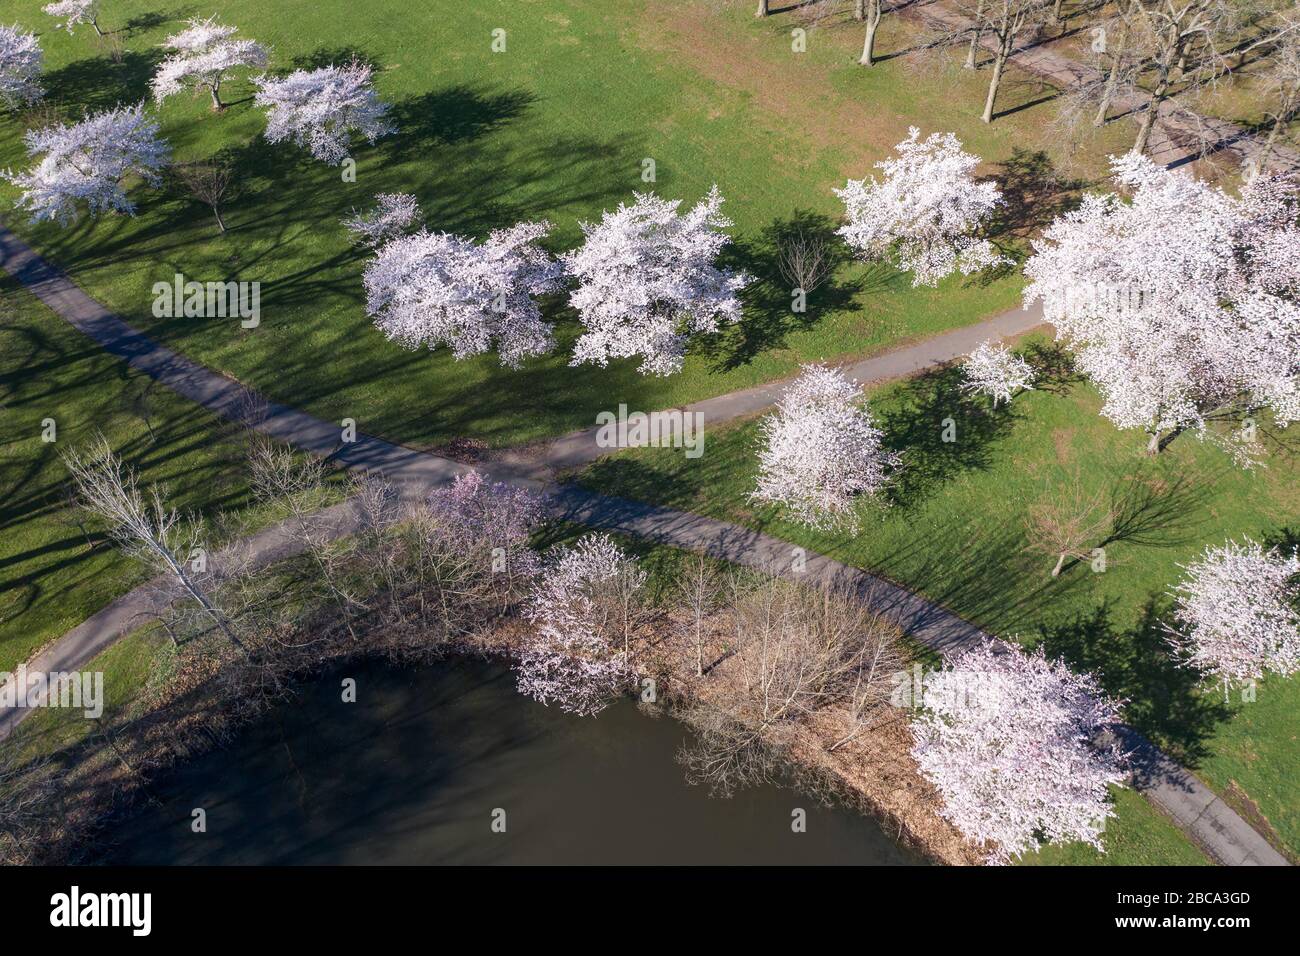 Luftaufnahme von Kirschbäumen in voller Blüte, die einen Teich mit hübschen rosa Blüten umgeben. Stockfoto